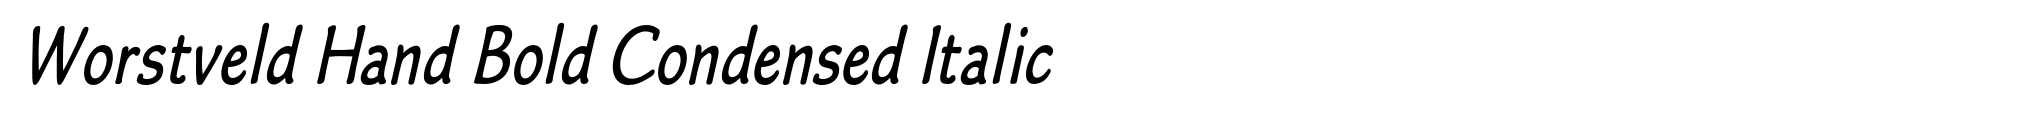 Worstveld Hand Bold Condensed Italic image